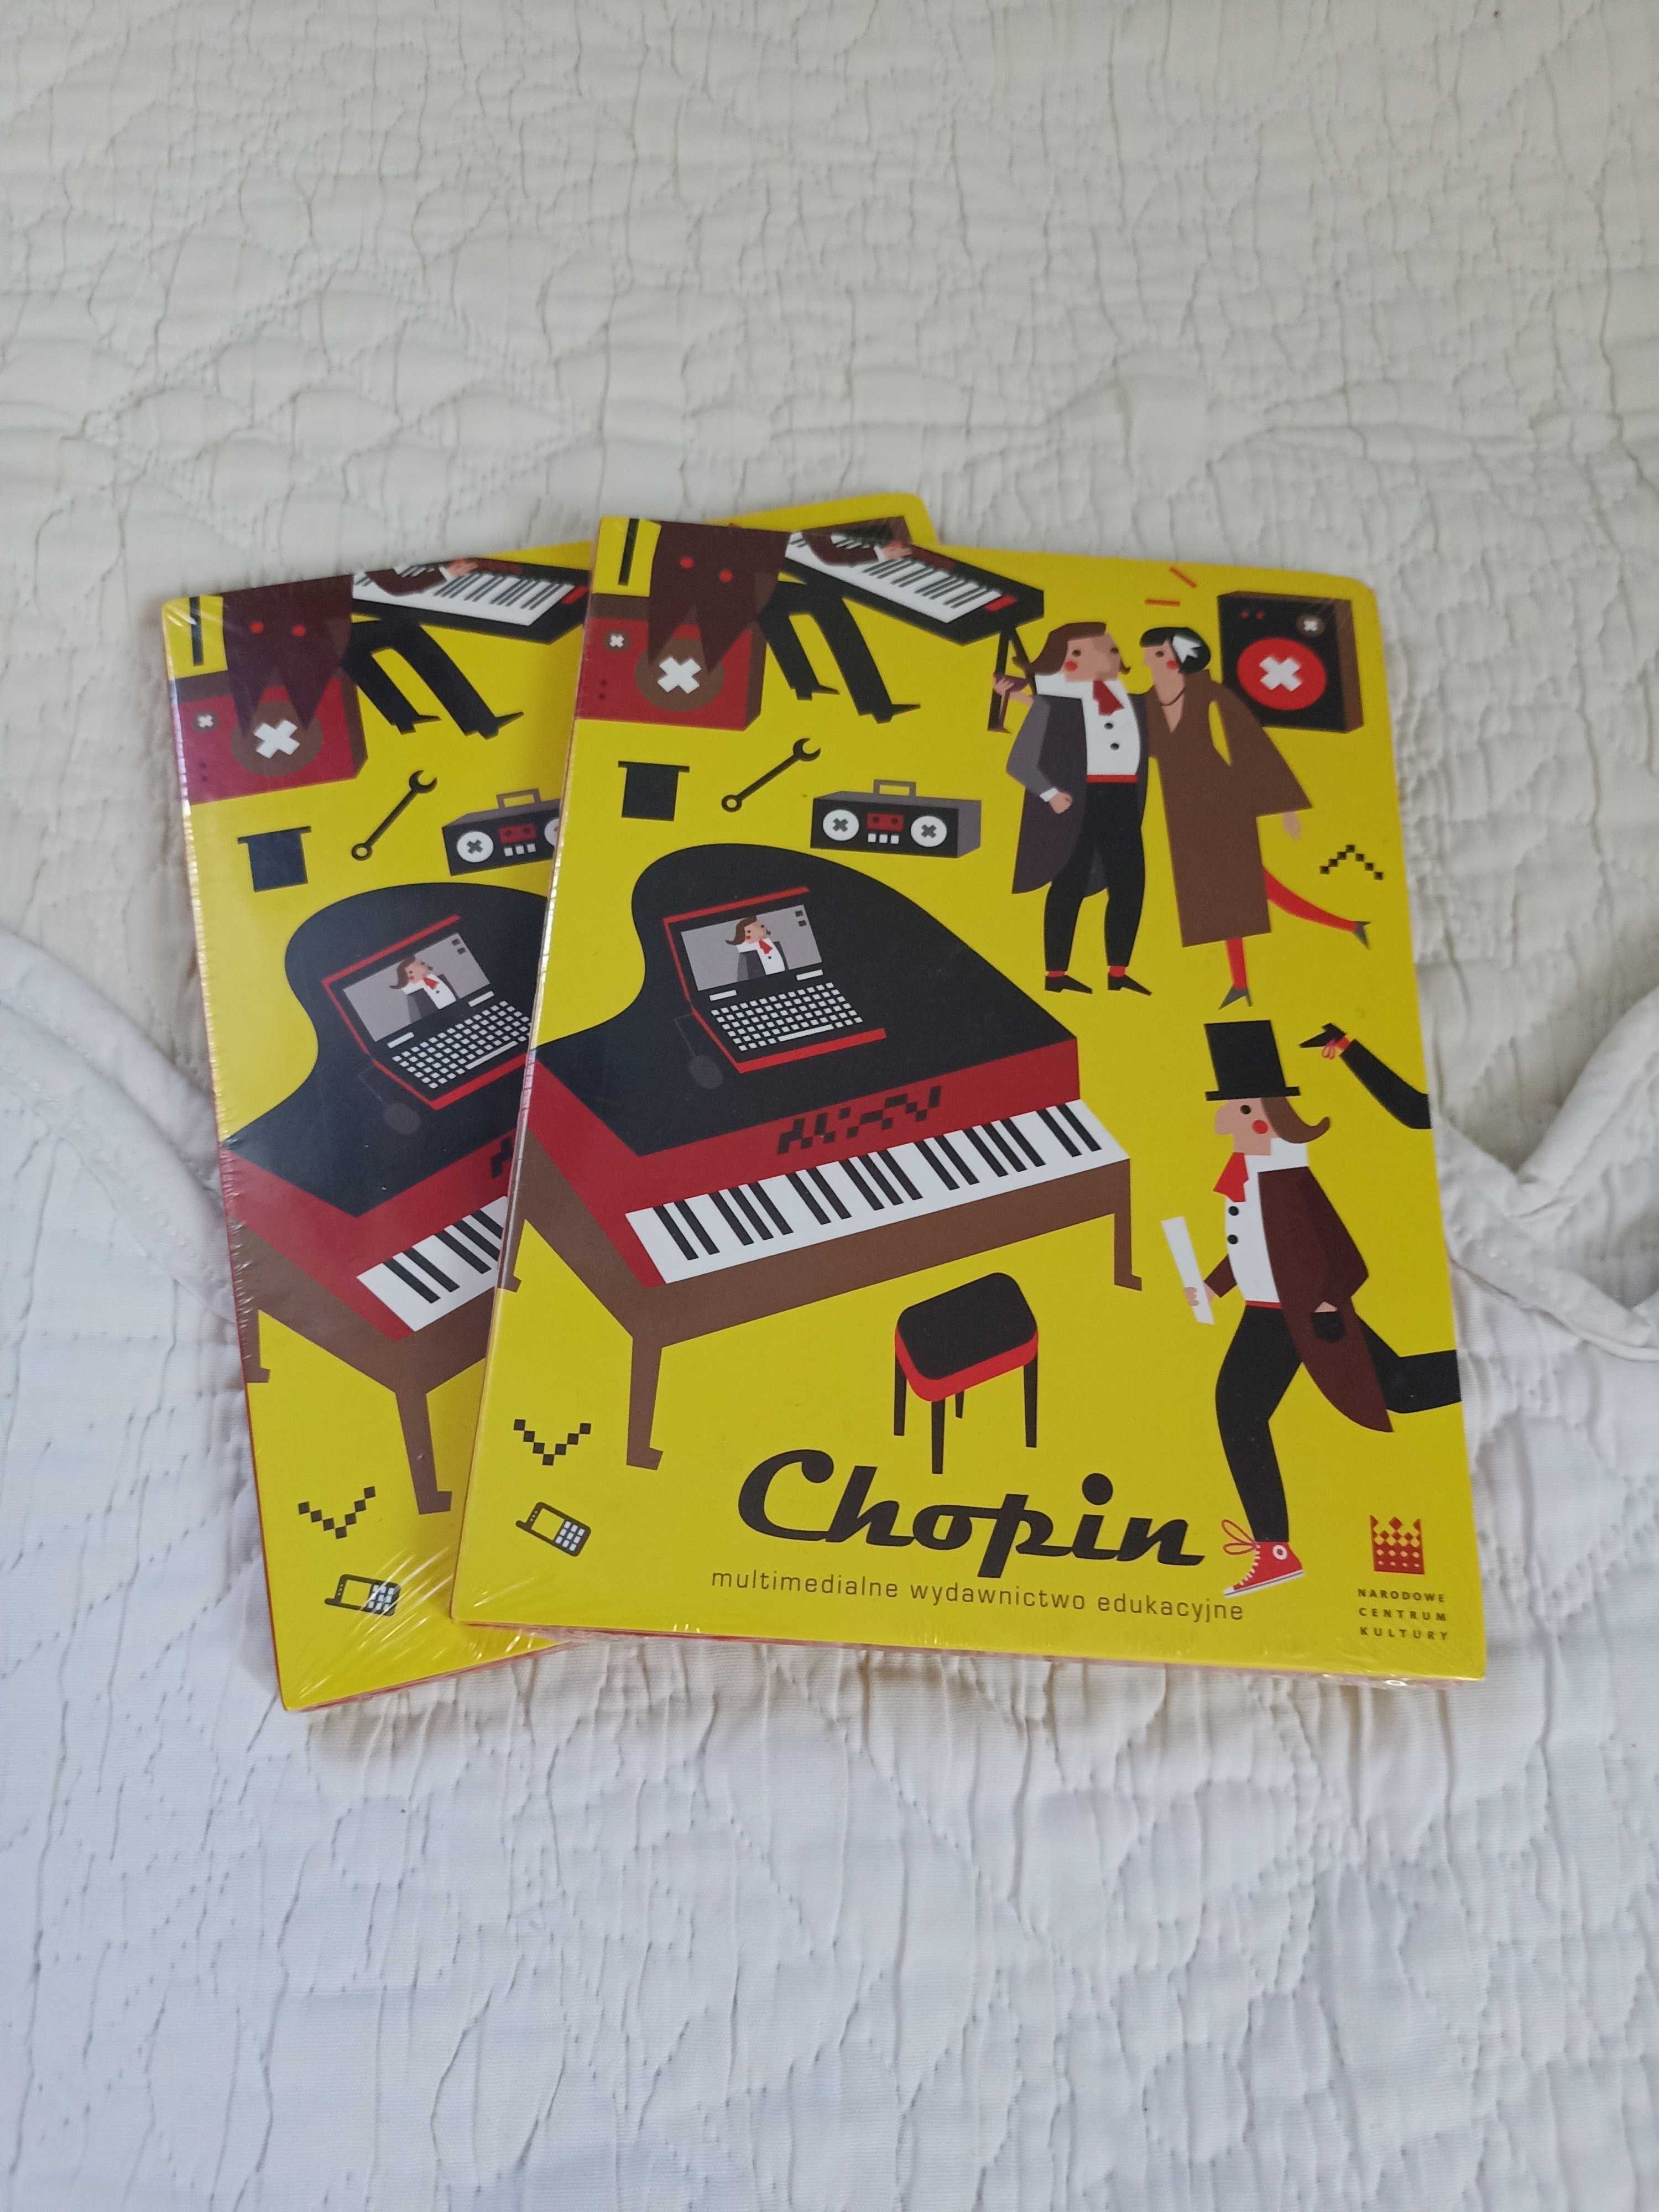 Chopin - multimedialne wydawnictwo edukacyjne - Płyta CD